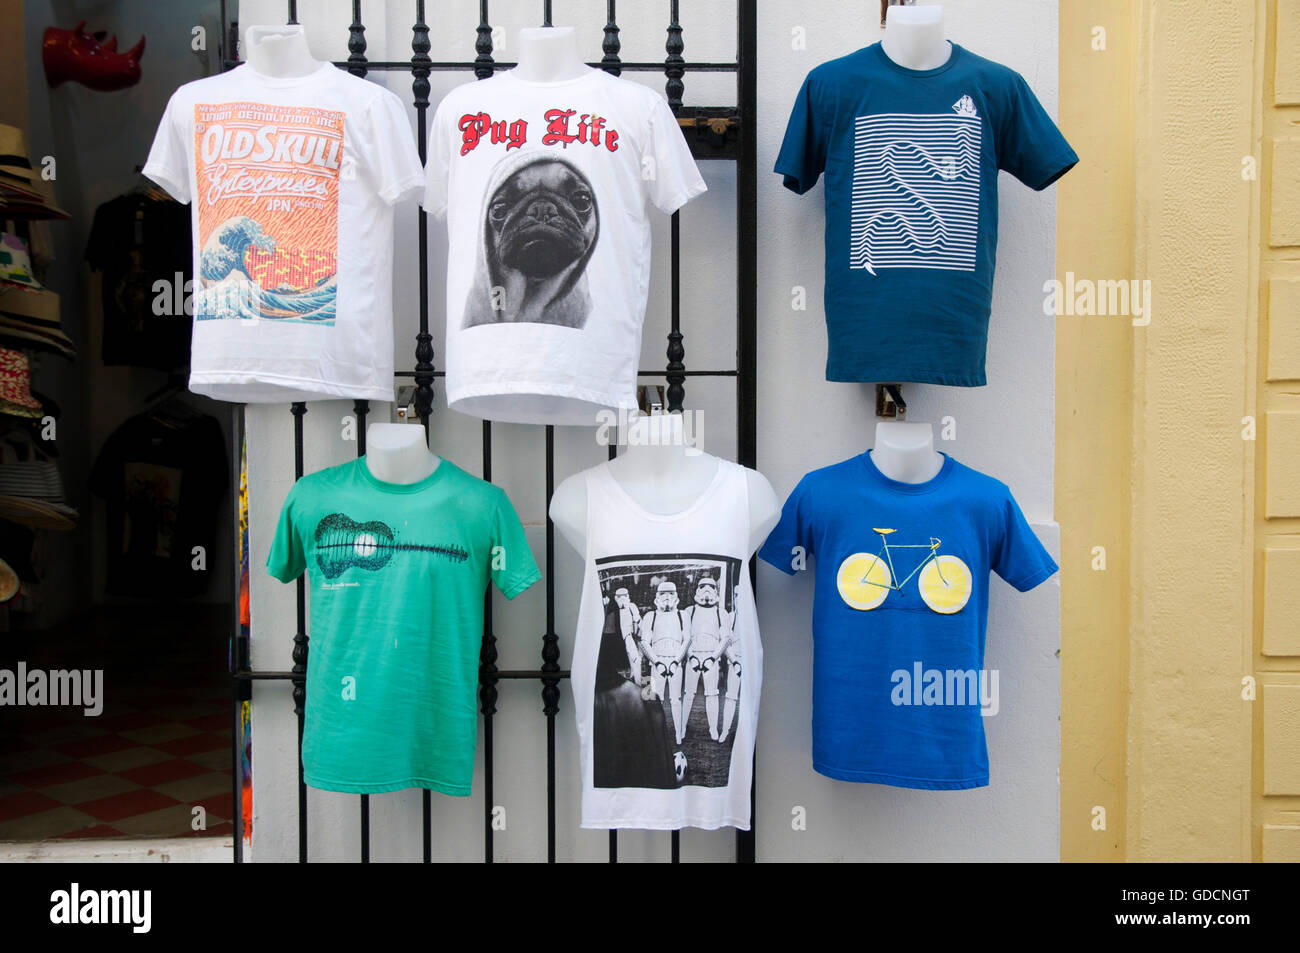 Various T shirt designs Stock Photo - Alamy